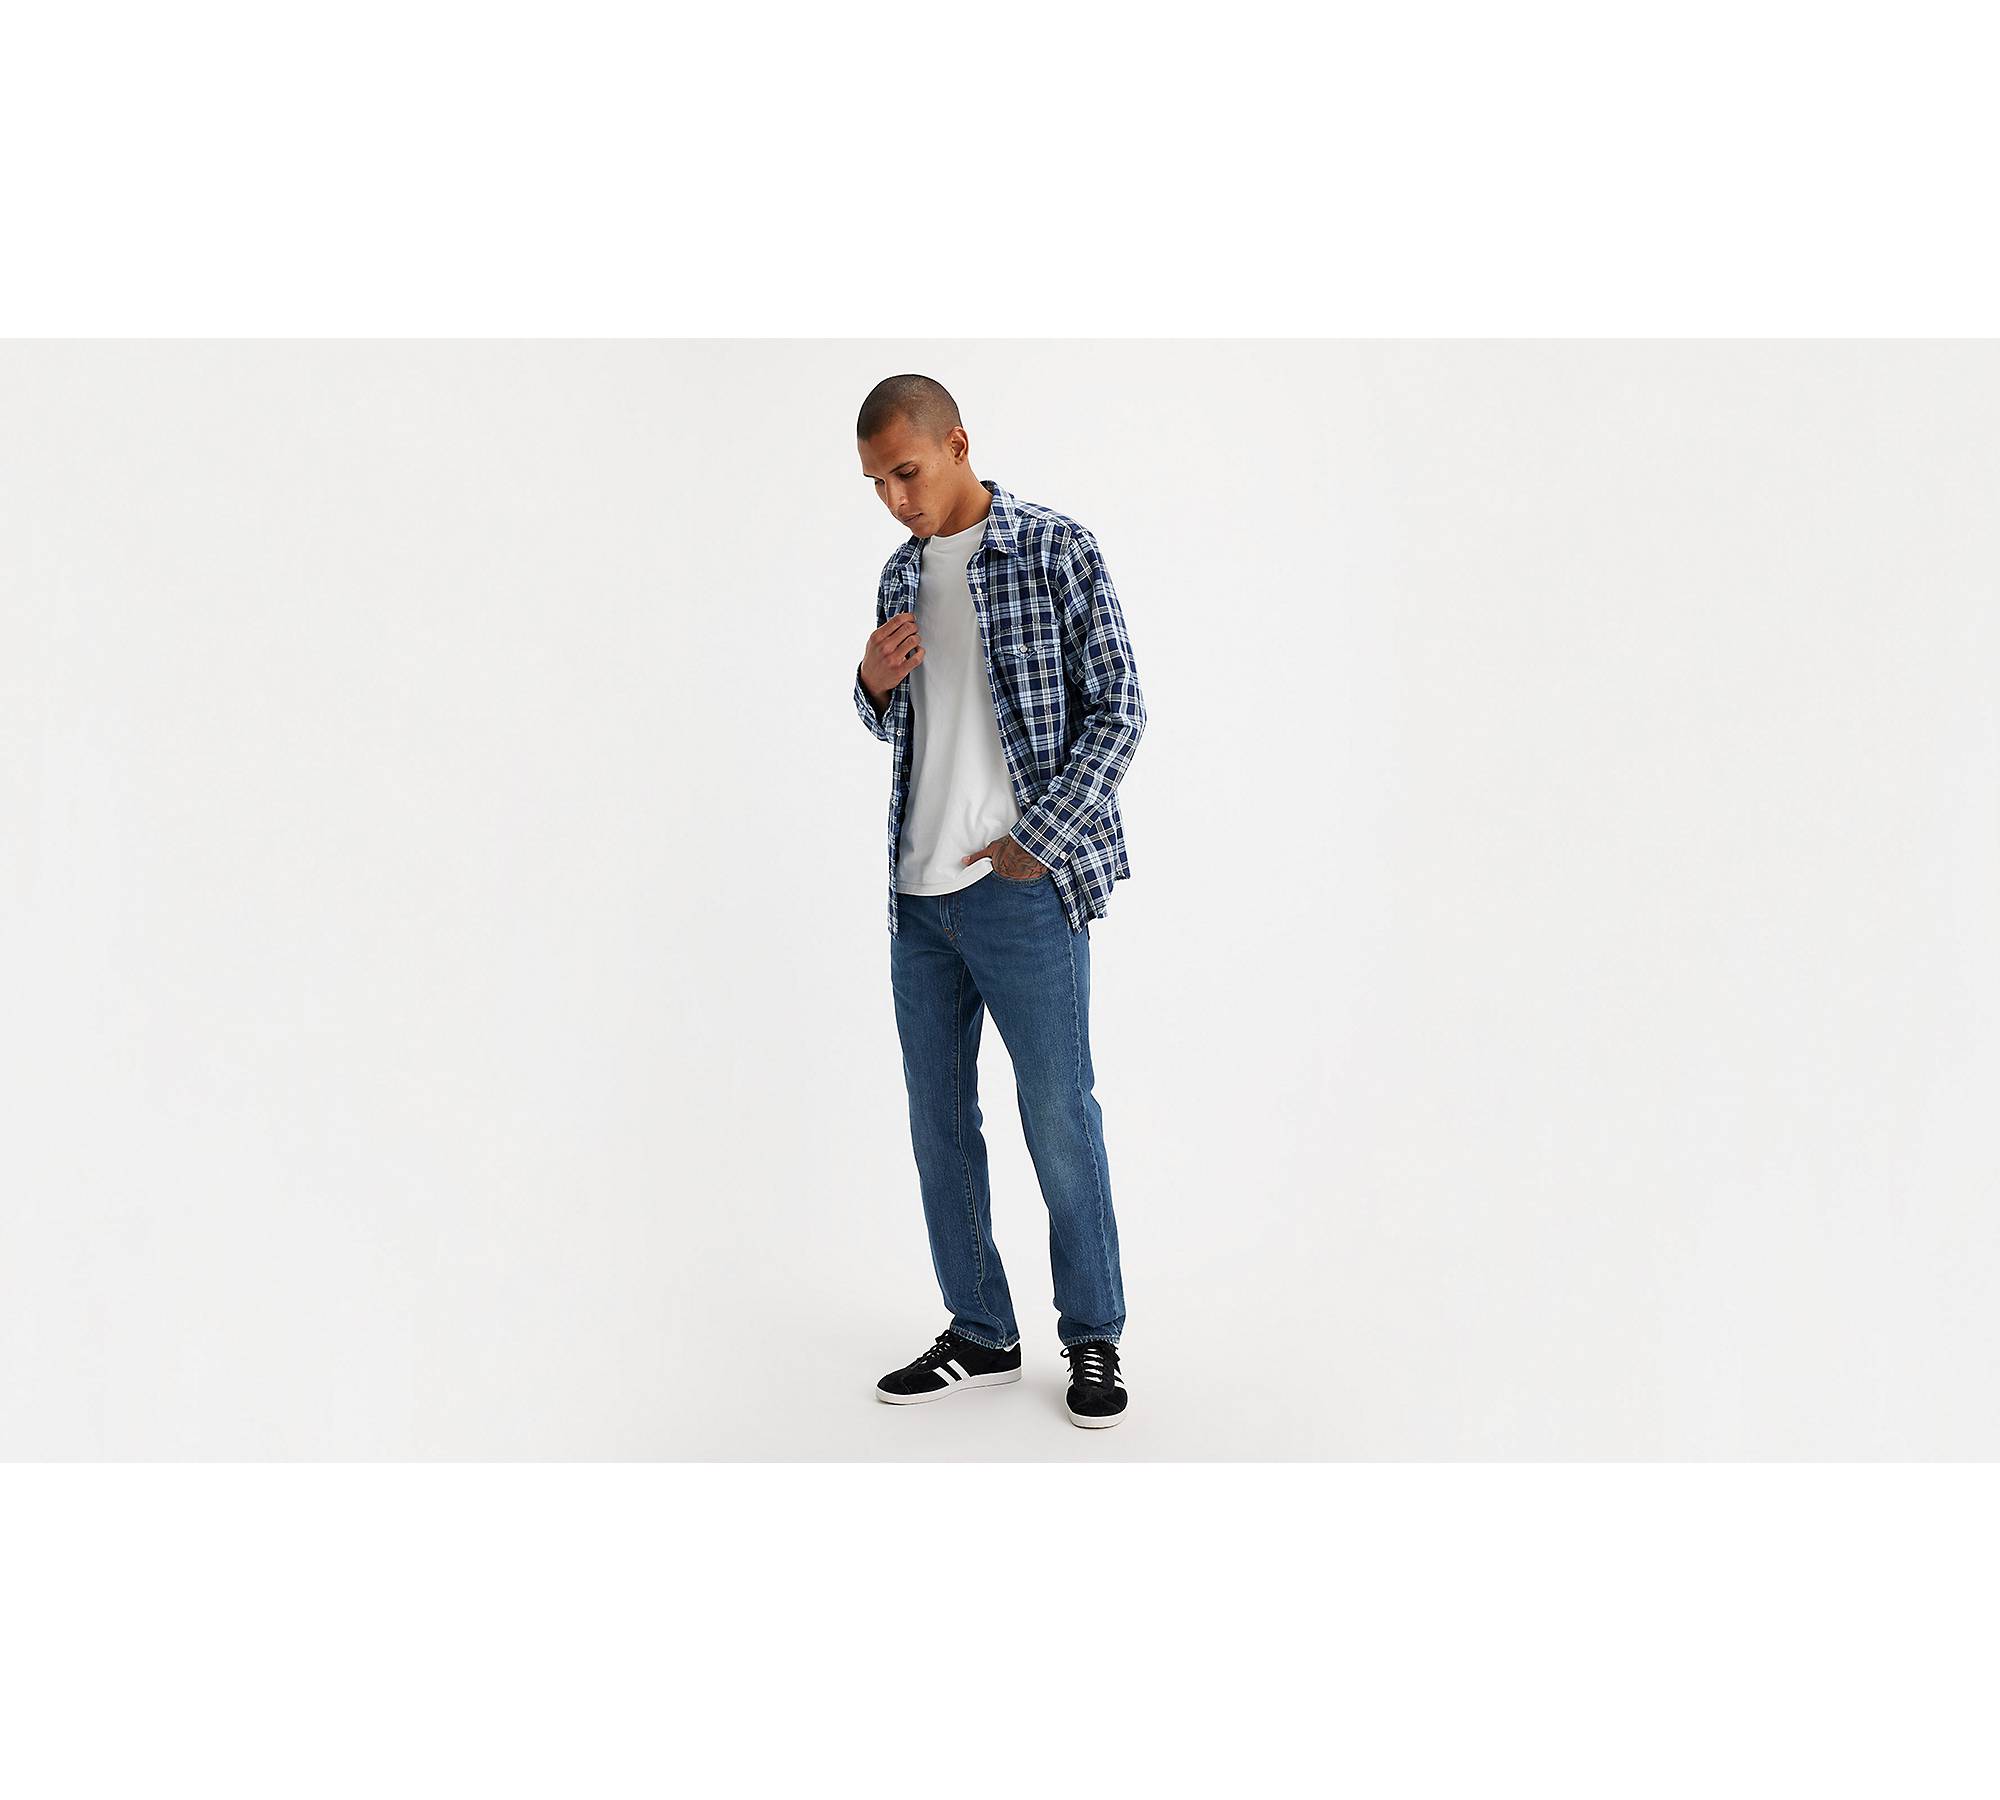 511™ Slim Fit Authentic Soft Men's Jeans - Dark Wash | Levi's® US